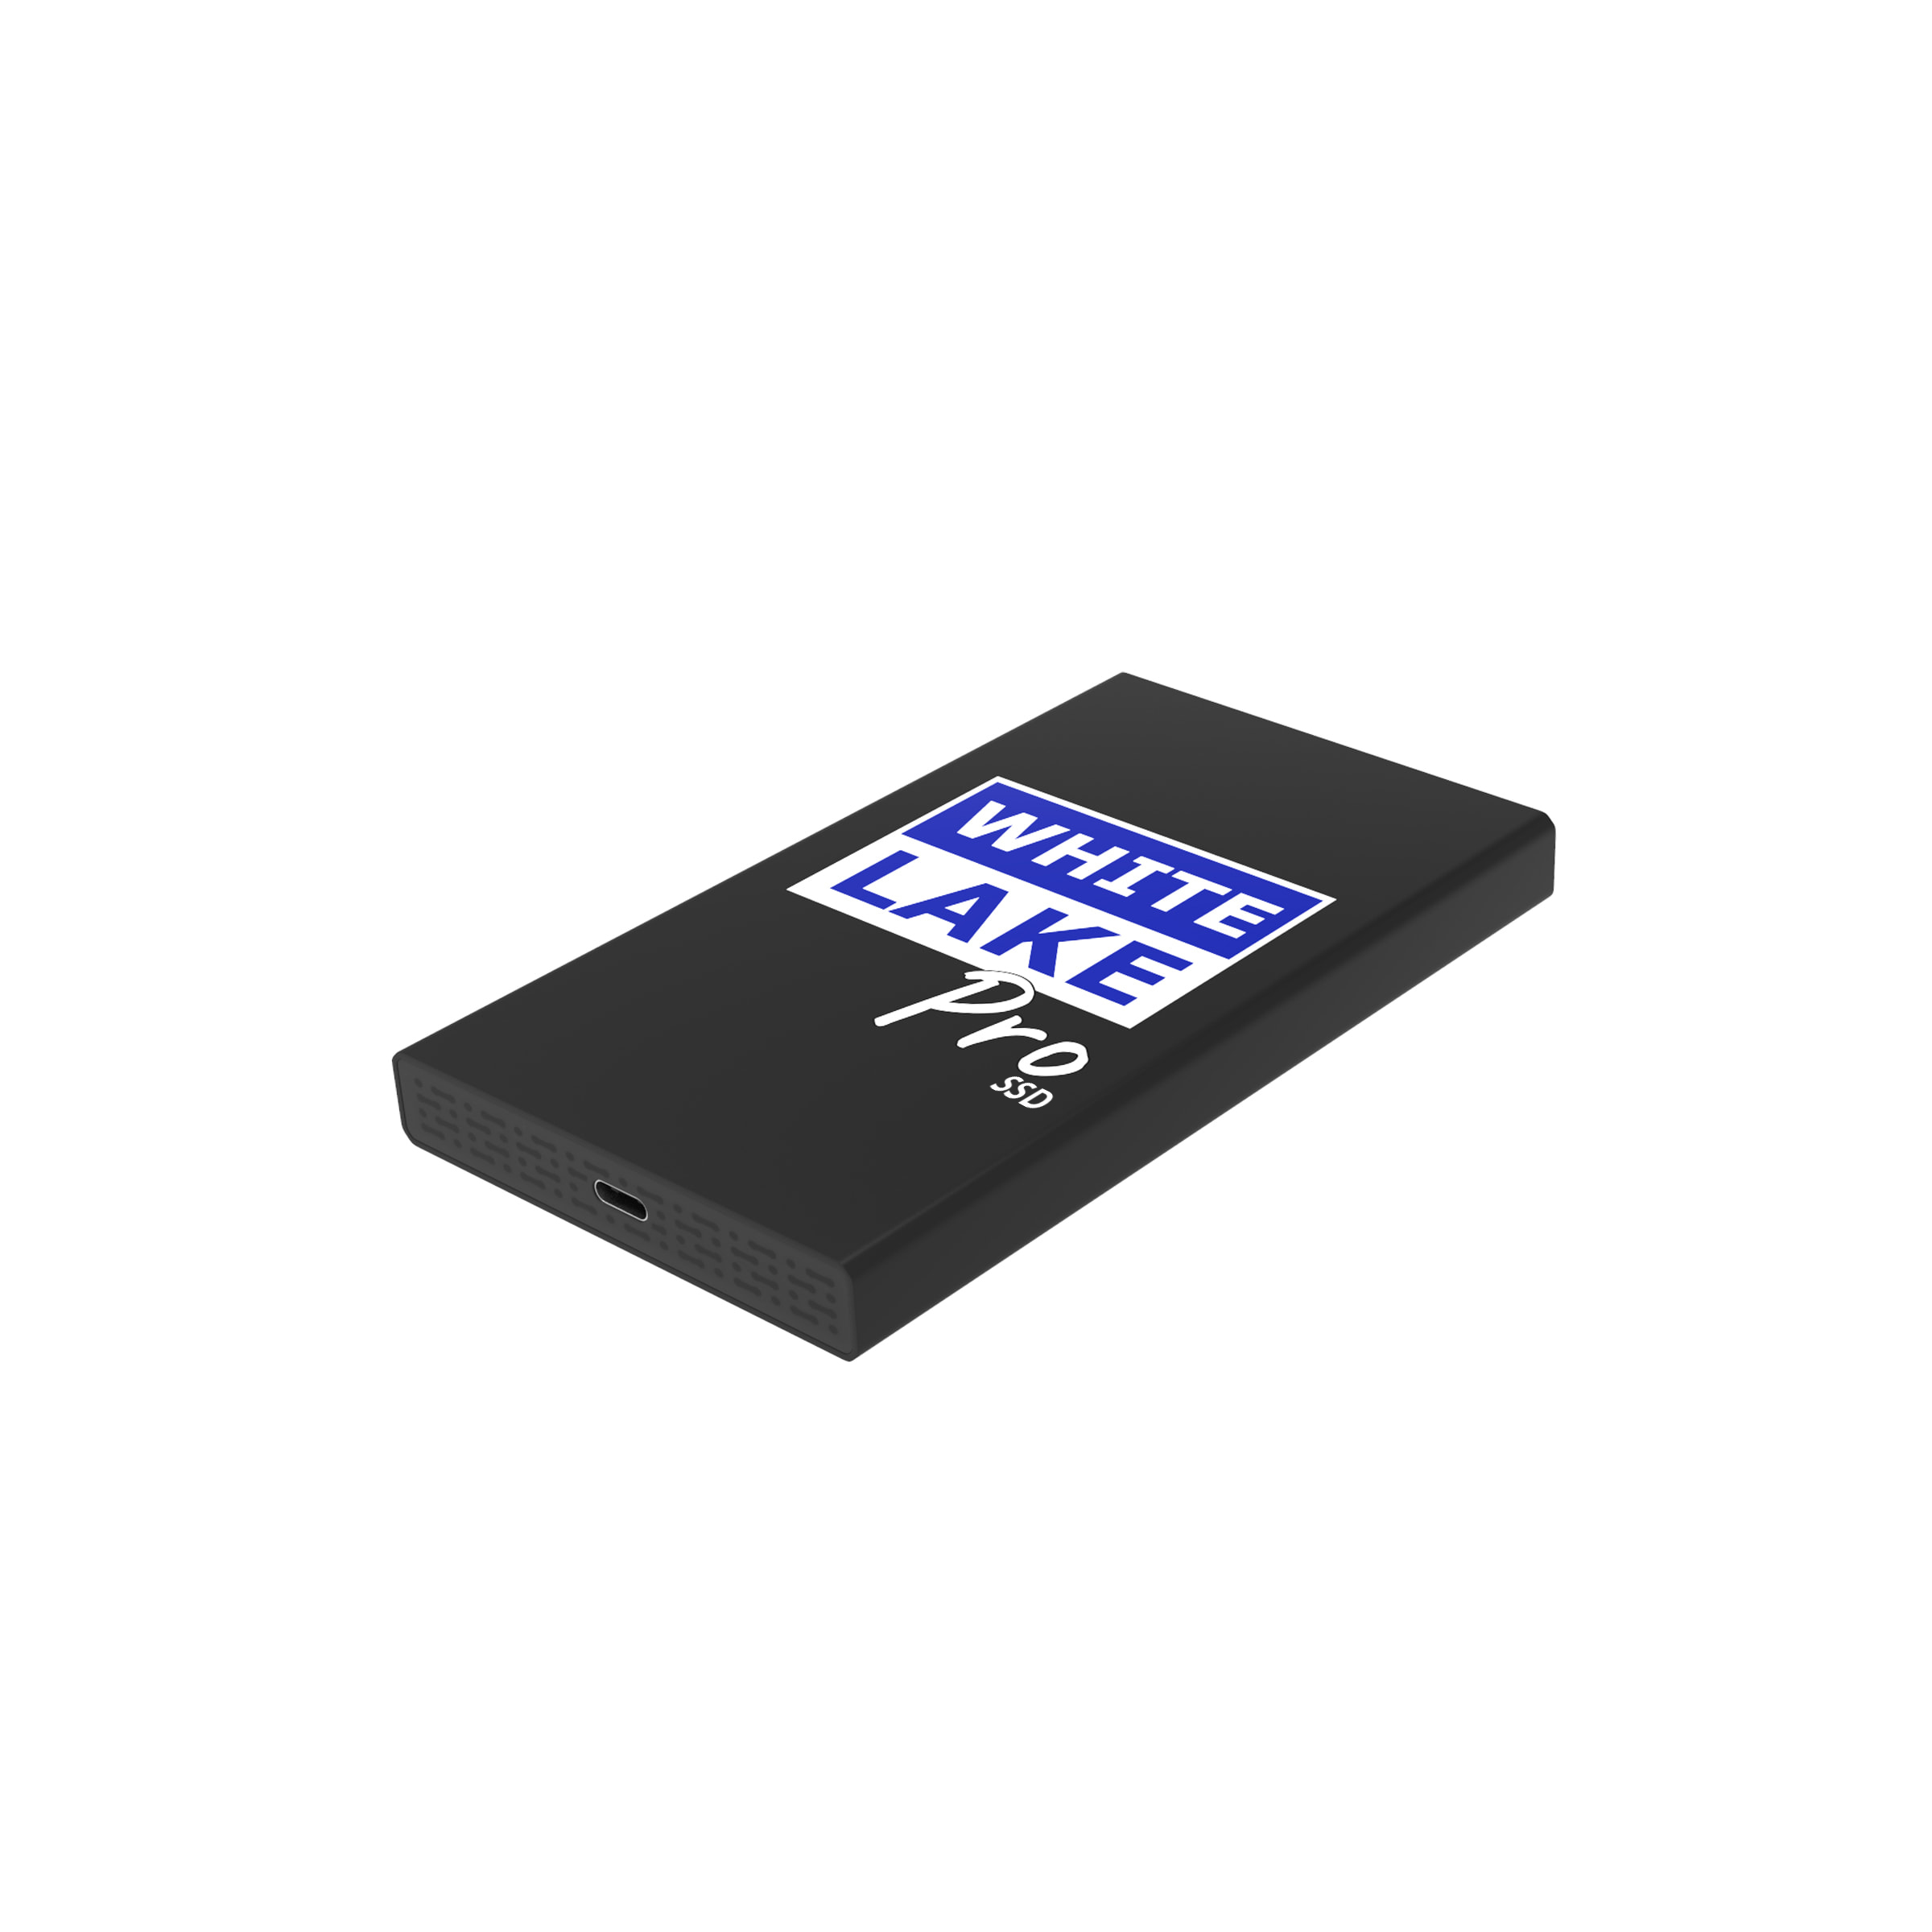 White Lake Pro External SSD Black, 240GB